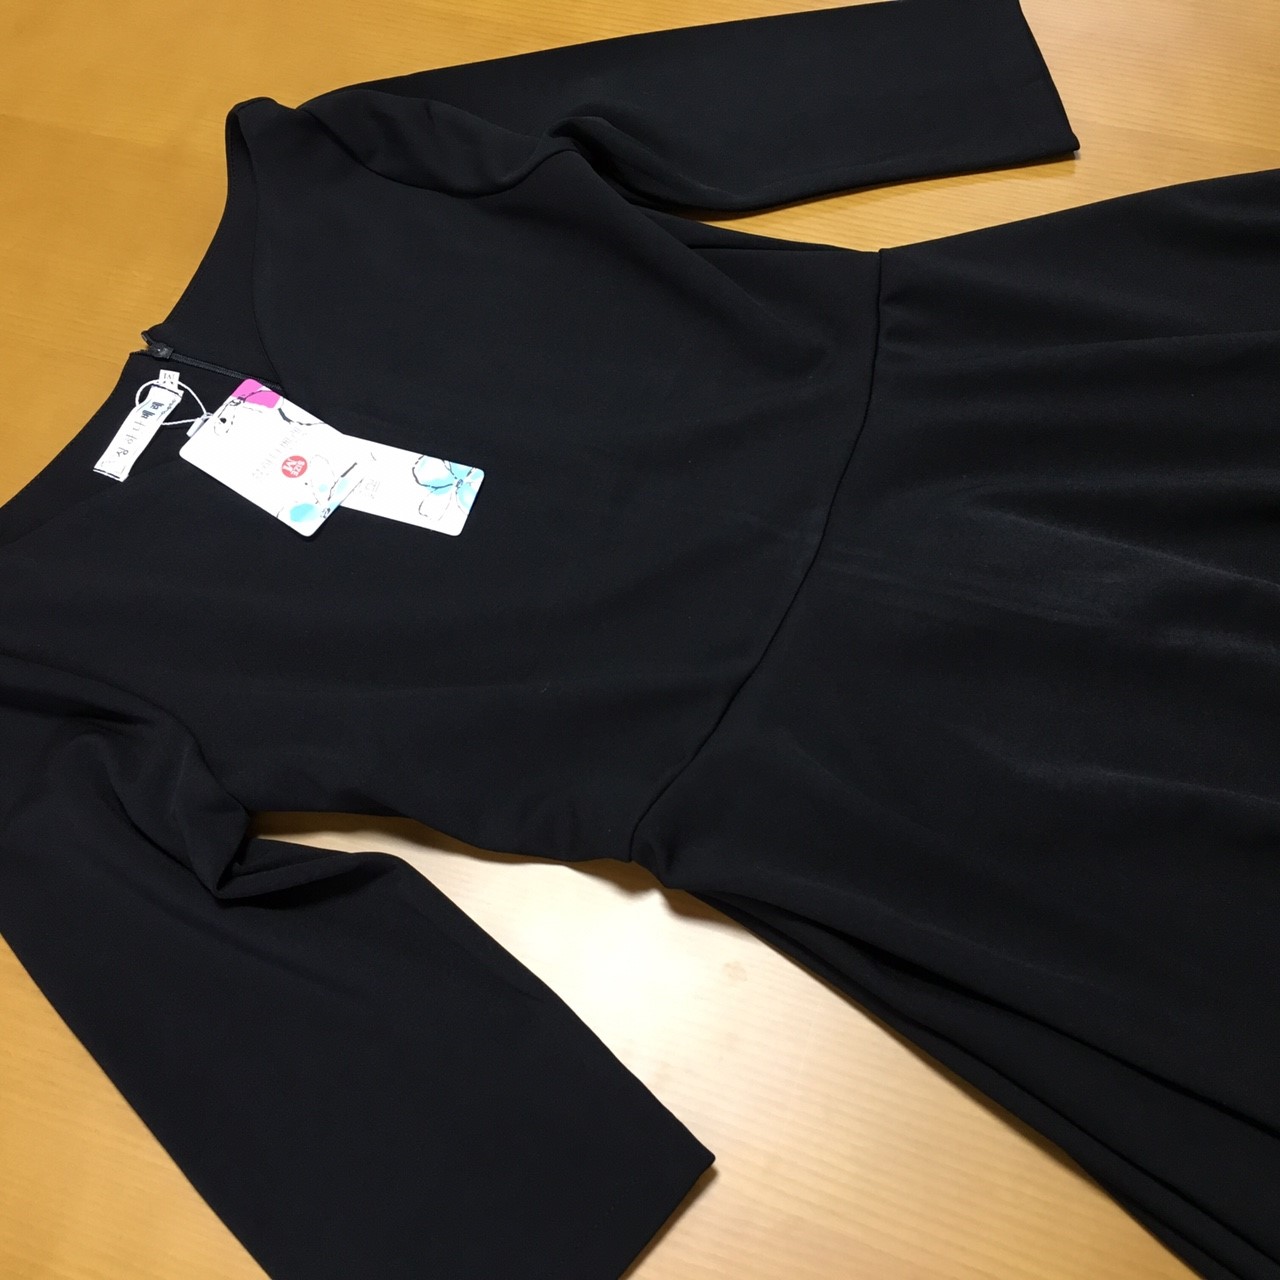 美デコルテをアピール♡七分袖でシーズンレスに着られる、洗練のブラックドレス。